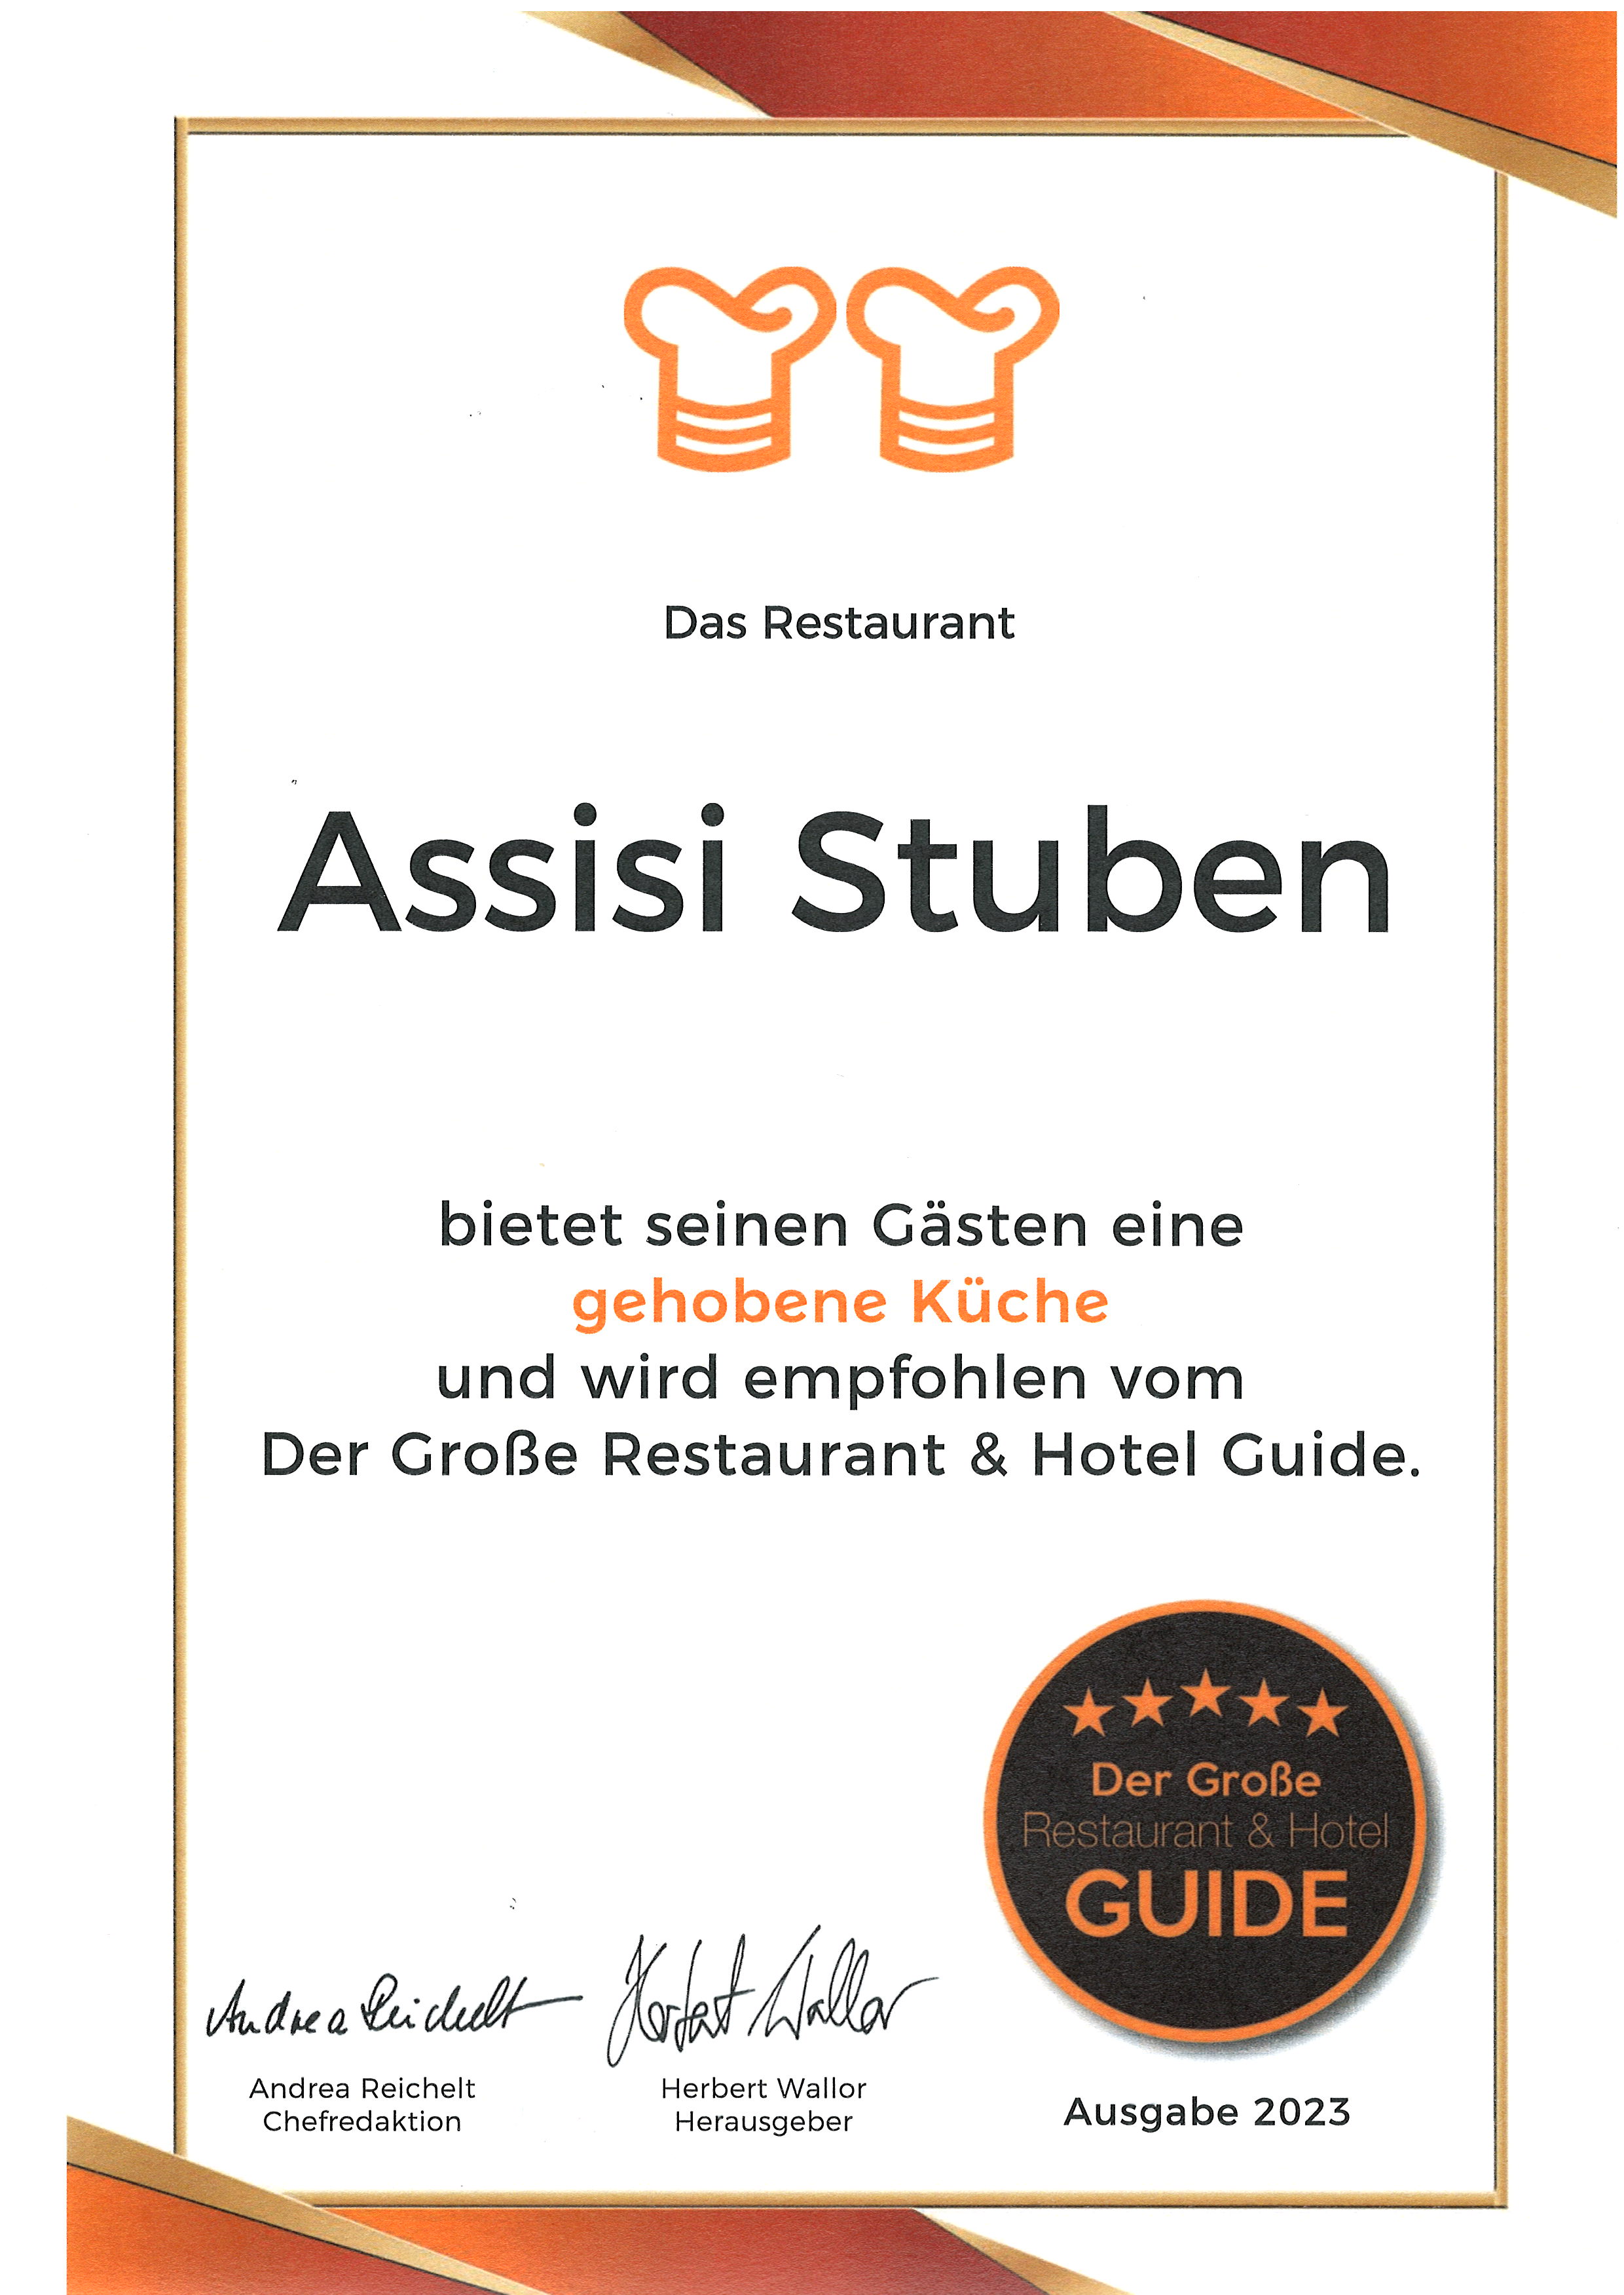 Der Große Restaurant und Hotel Guide 